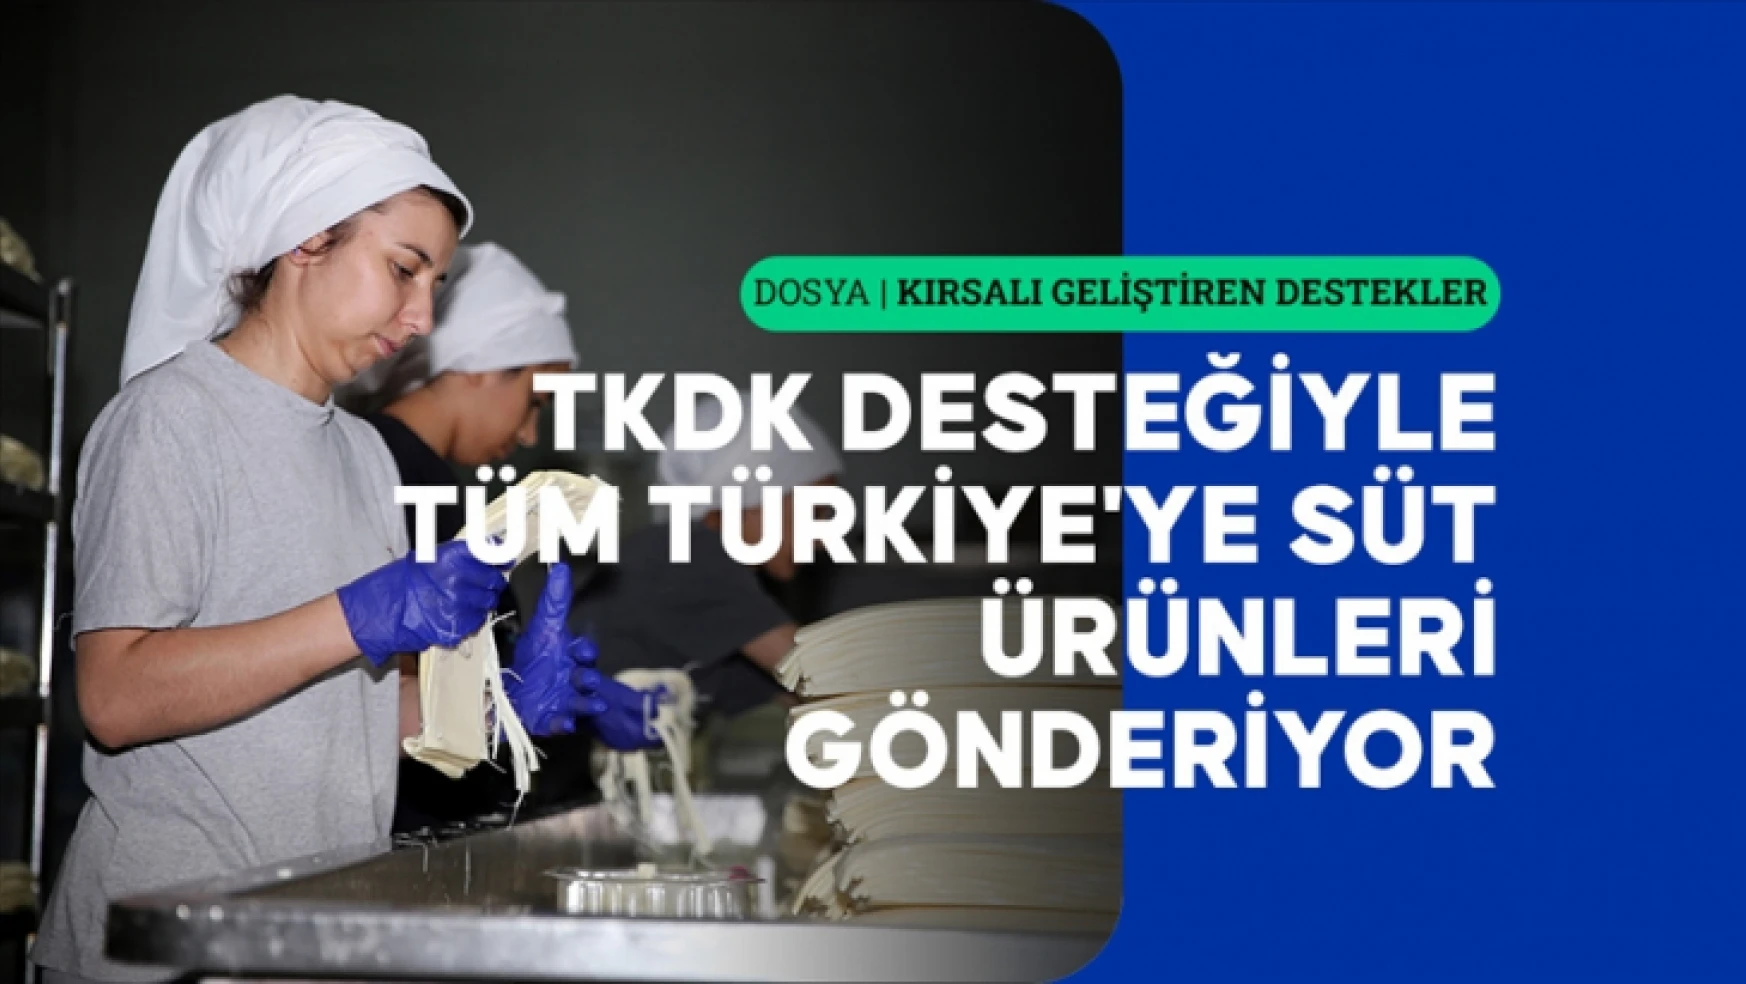 TKDK desteğiyle tüm Türkiye'ye süt ürünleri göndermeye başladı